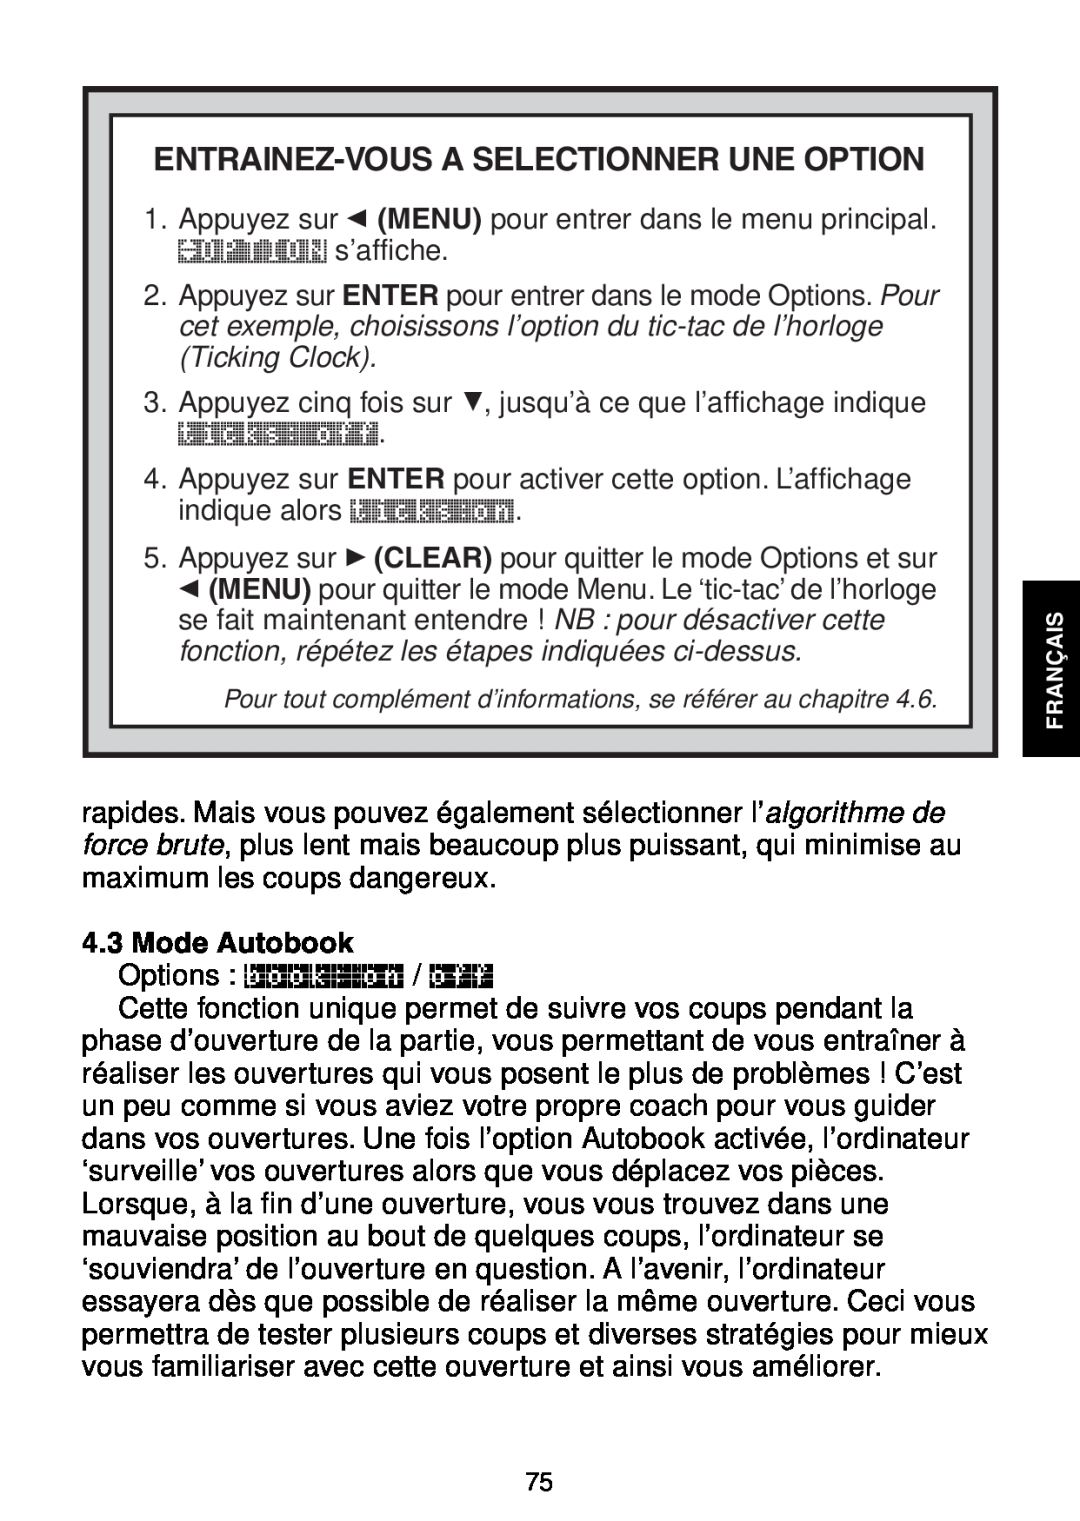 Saitek Maestro Travel Chess Computer manual Entrainez-Vous A Selectionner Une Option, Mode Autobook 